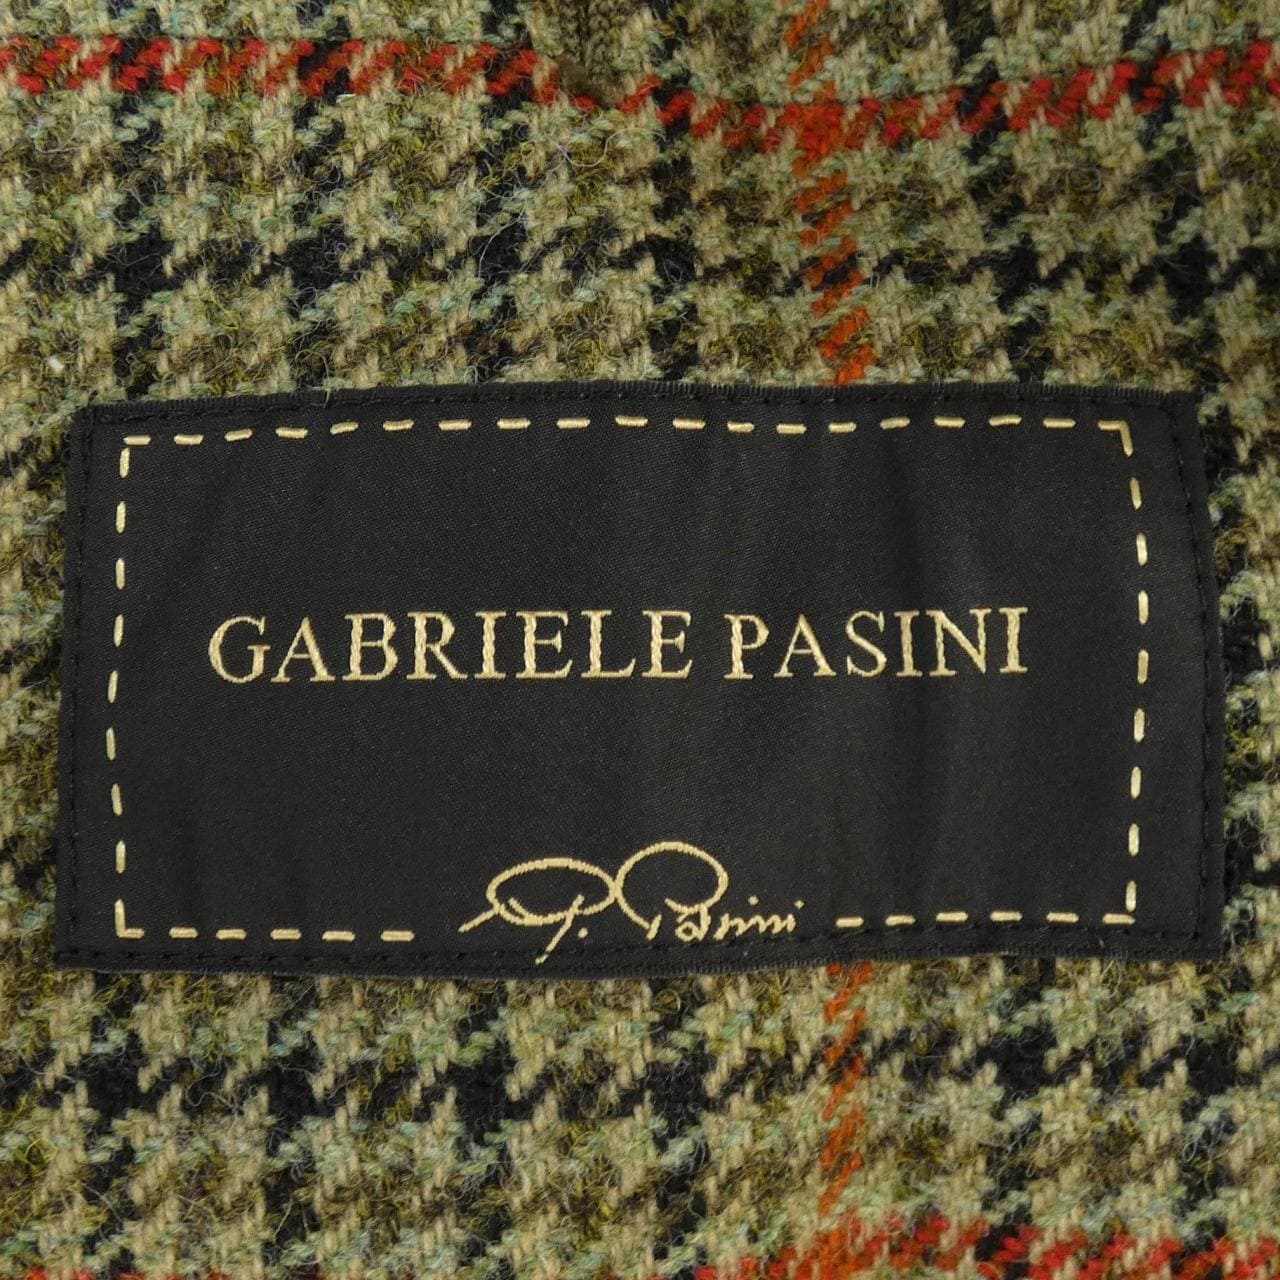 GABRIELE PASINI jacket